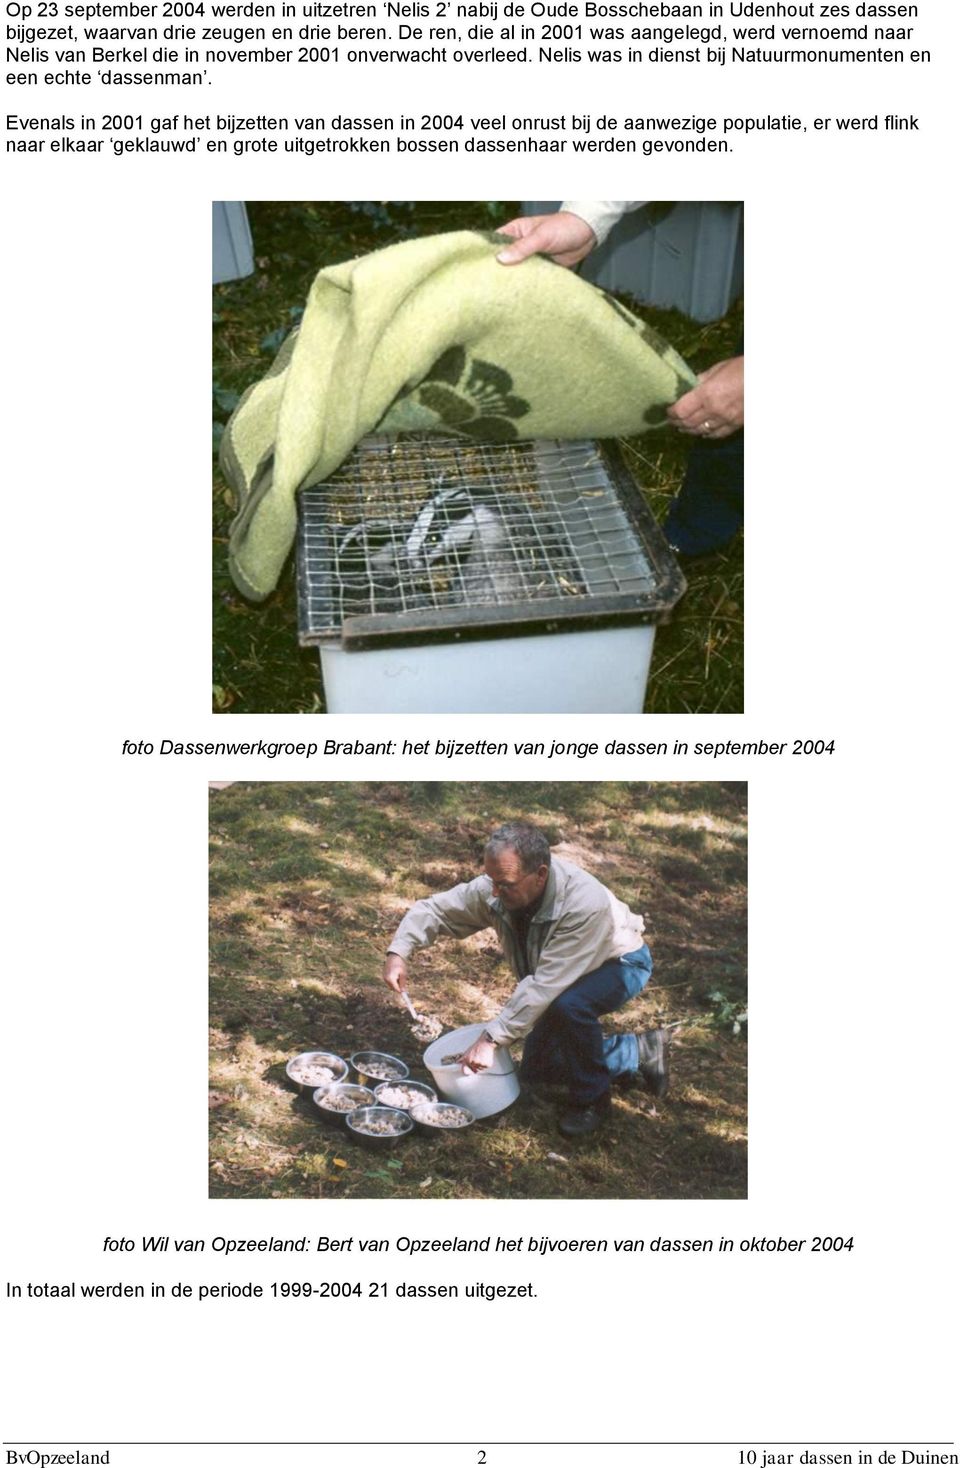 Evenals in 2001 gaf het bijzetten van dassen in 2004 veel onrust bij de aanwezige populatie, er werd flink naar elkaar geklauwd en grote uitgetrokken bossen dassenhaar werden gevonden.